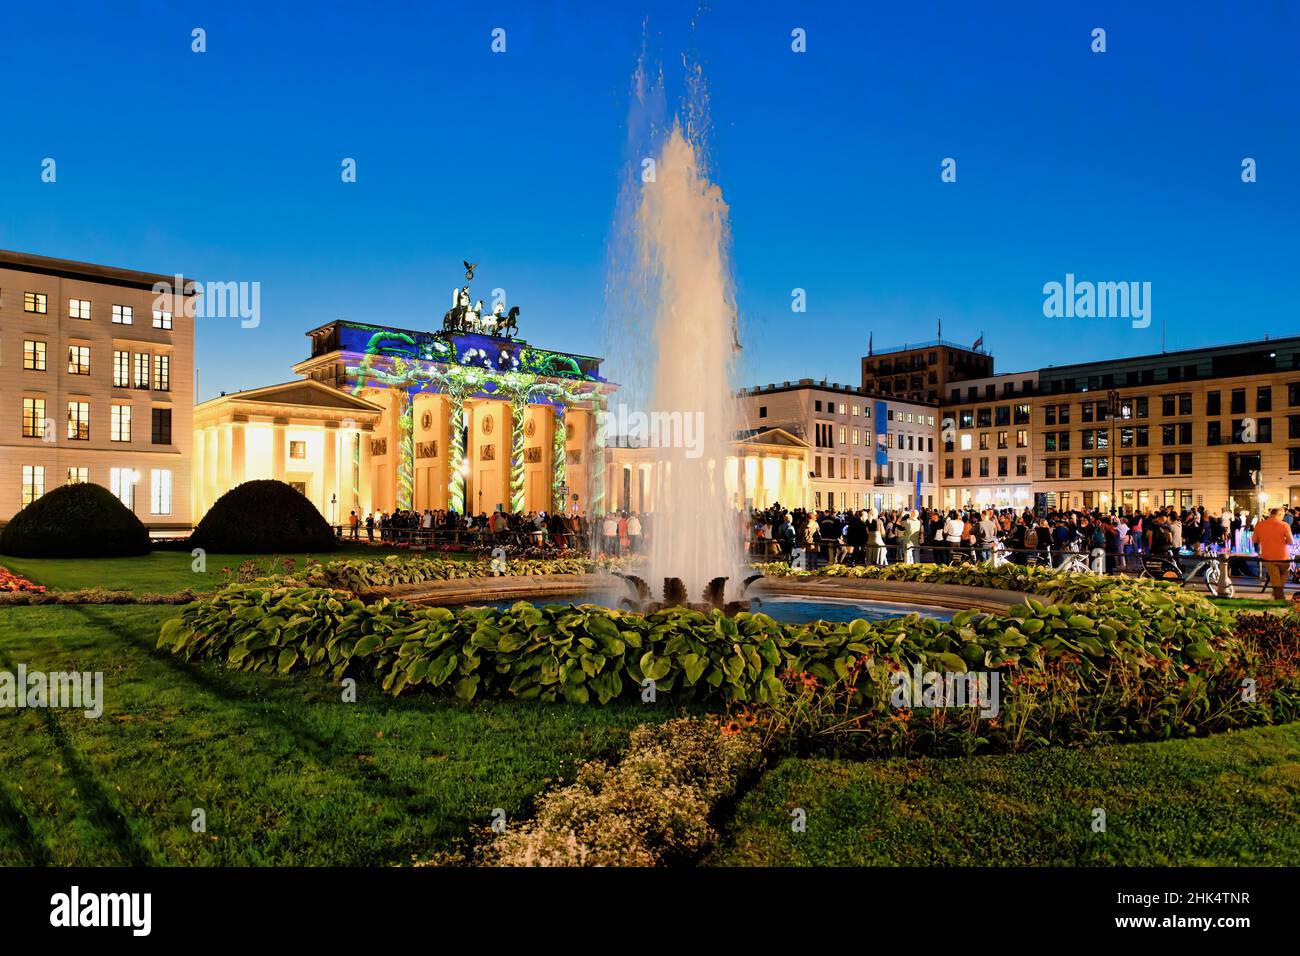 Porta di Brandeburgo durante il Festival delle luci, Piazza Pariser, Unter den Linden, Berlino, Germania, Europa Foto Stock